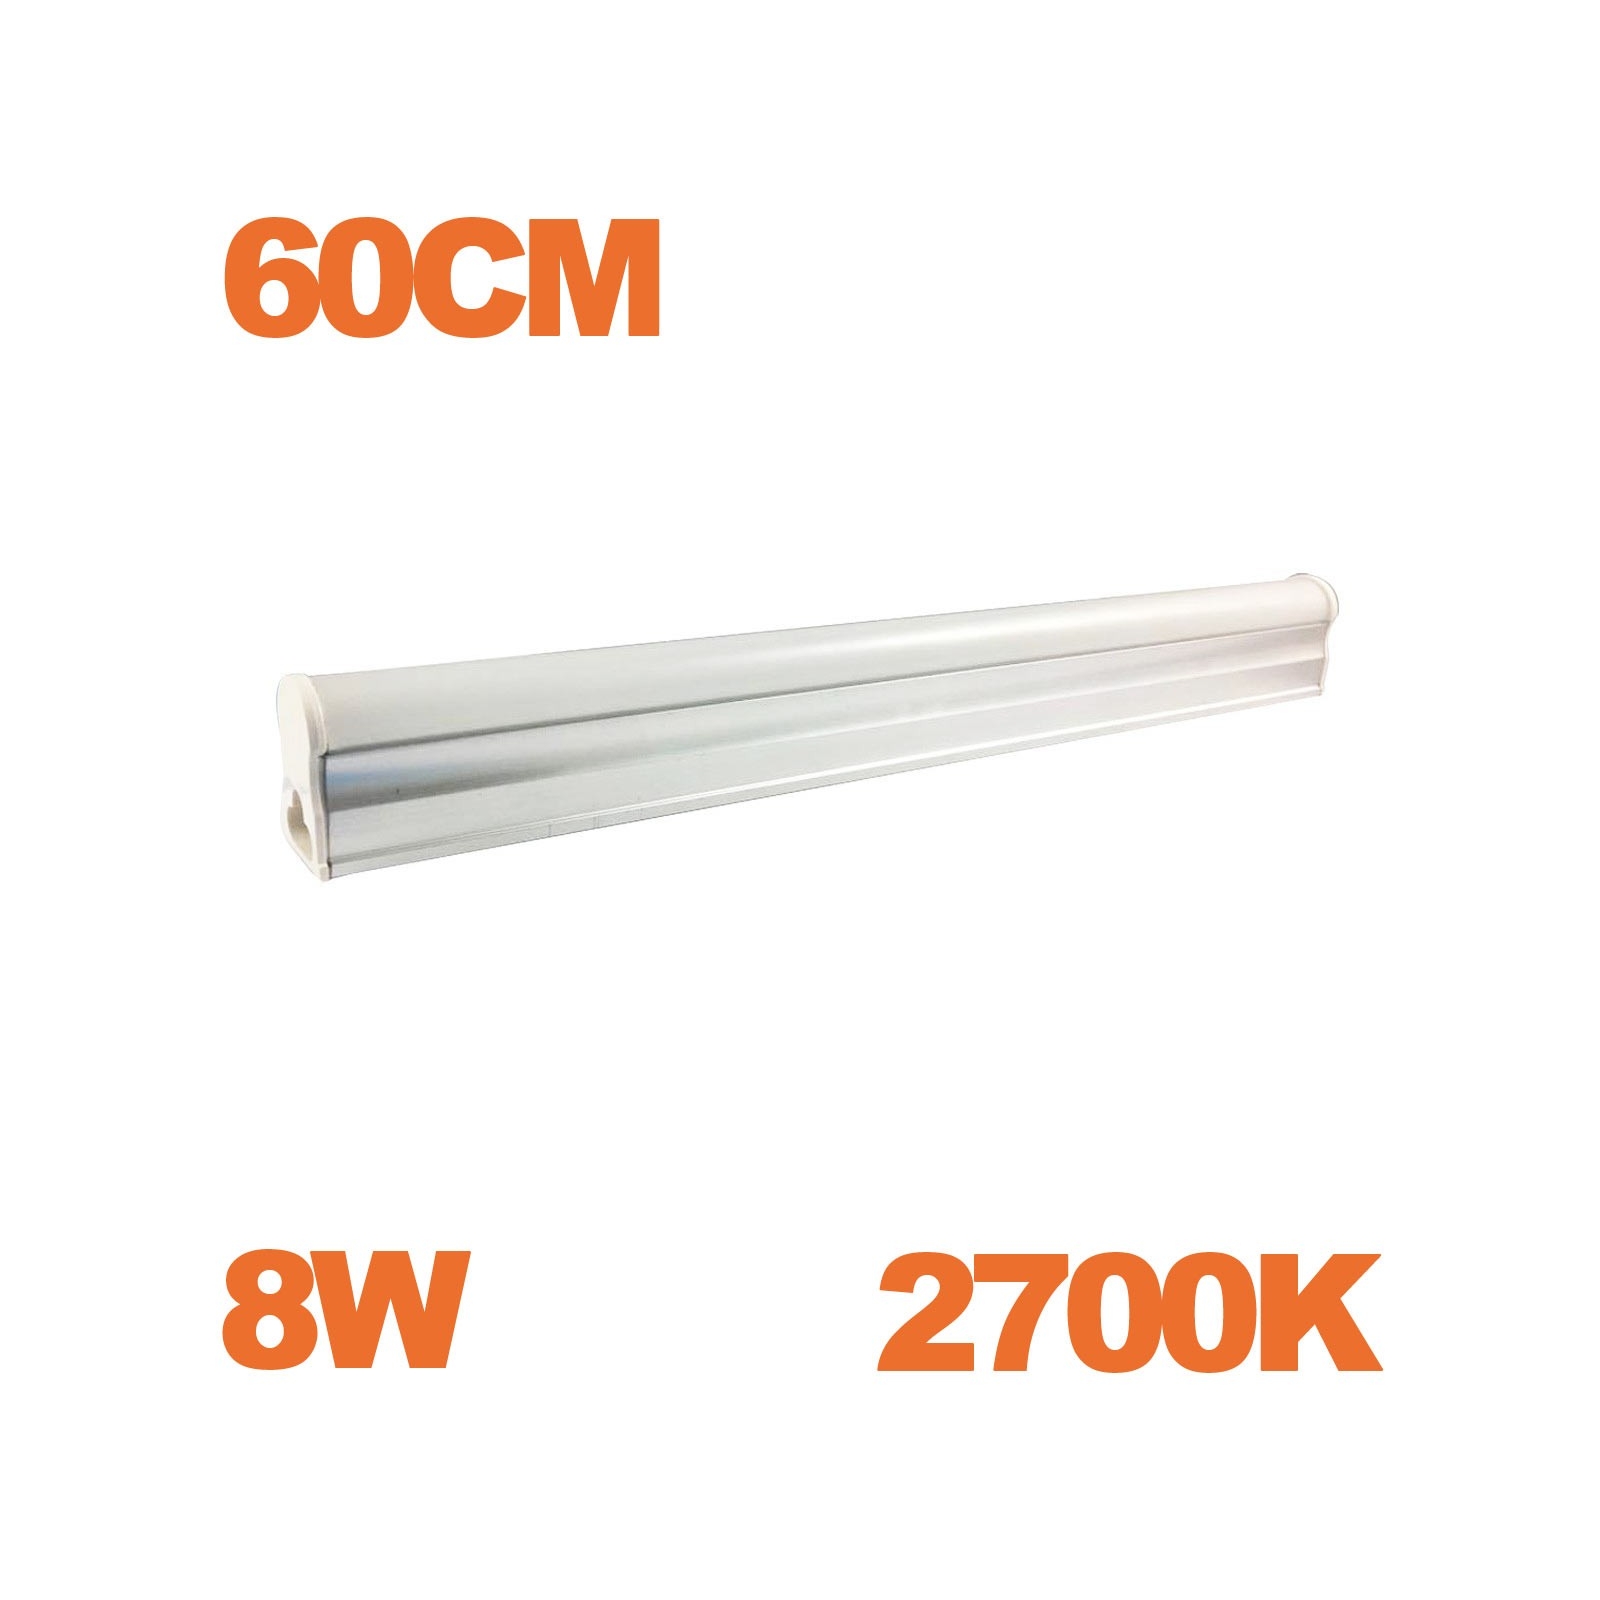 Tube LED T5 Puissance 8W Longueur 60cm Blanc Froid 6000K